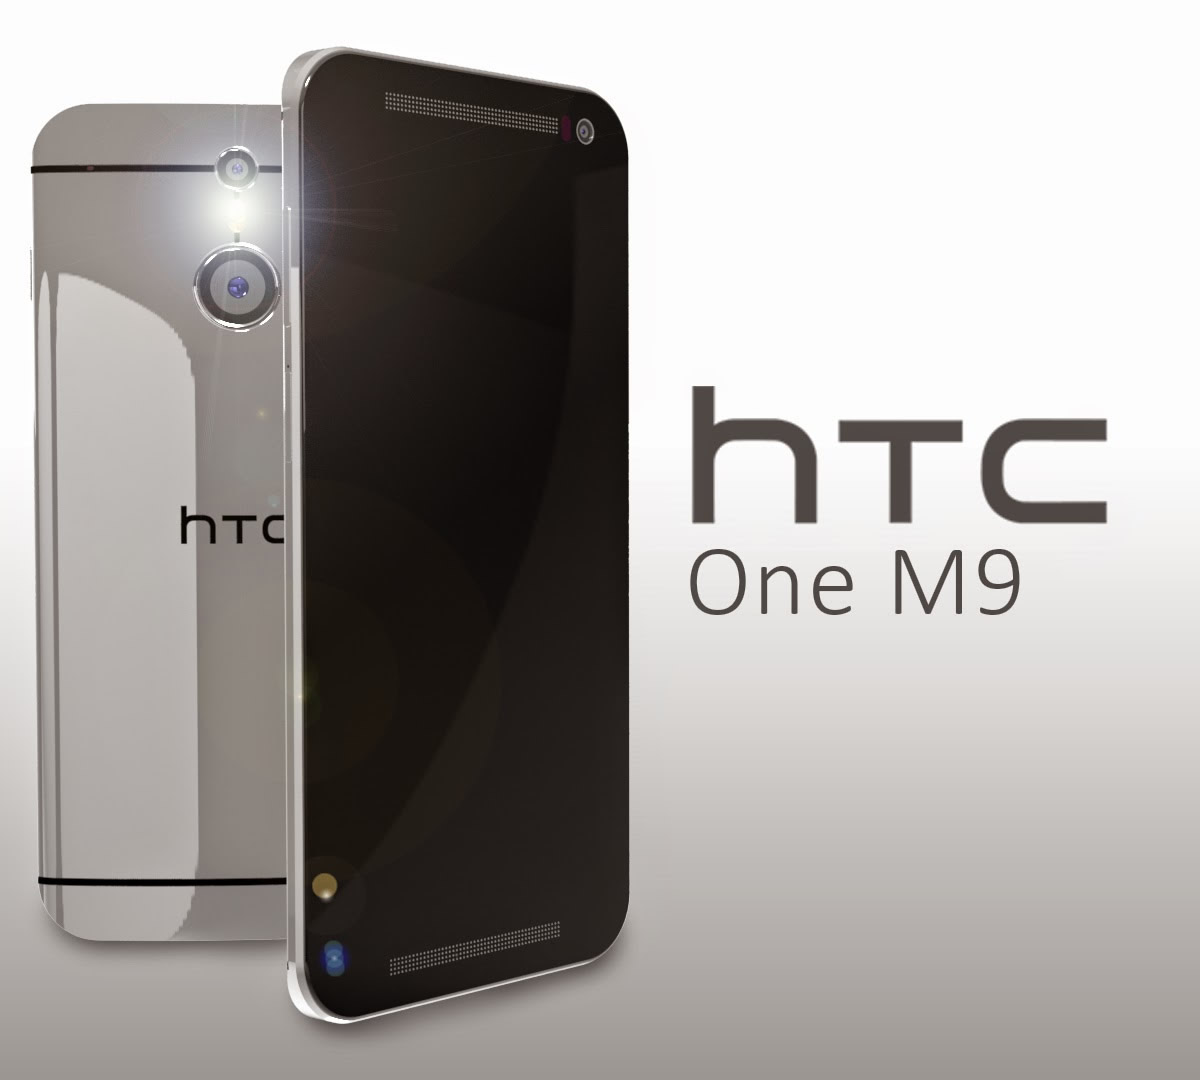 One M9 là dòng smartphone hot nhất hiện nay của HTC